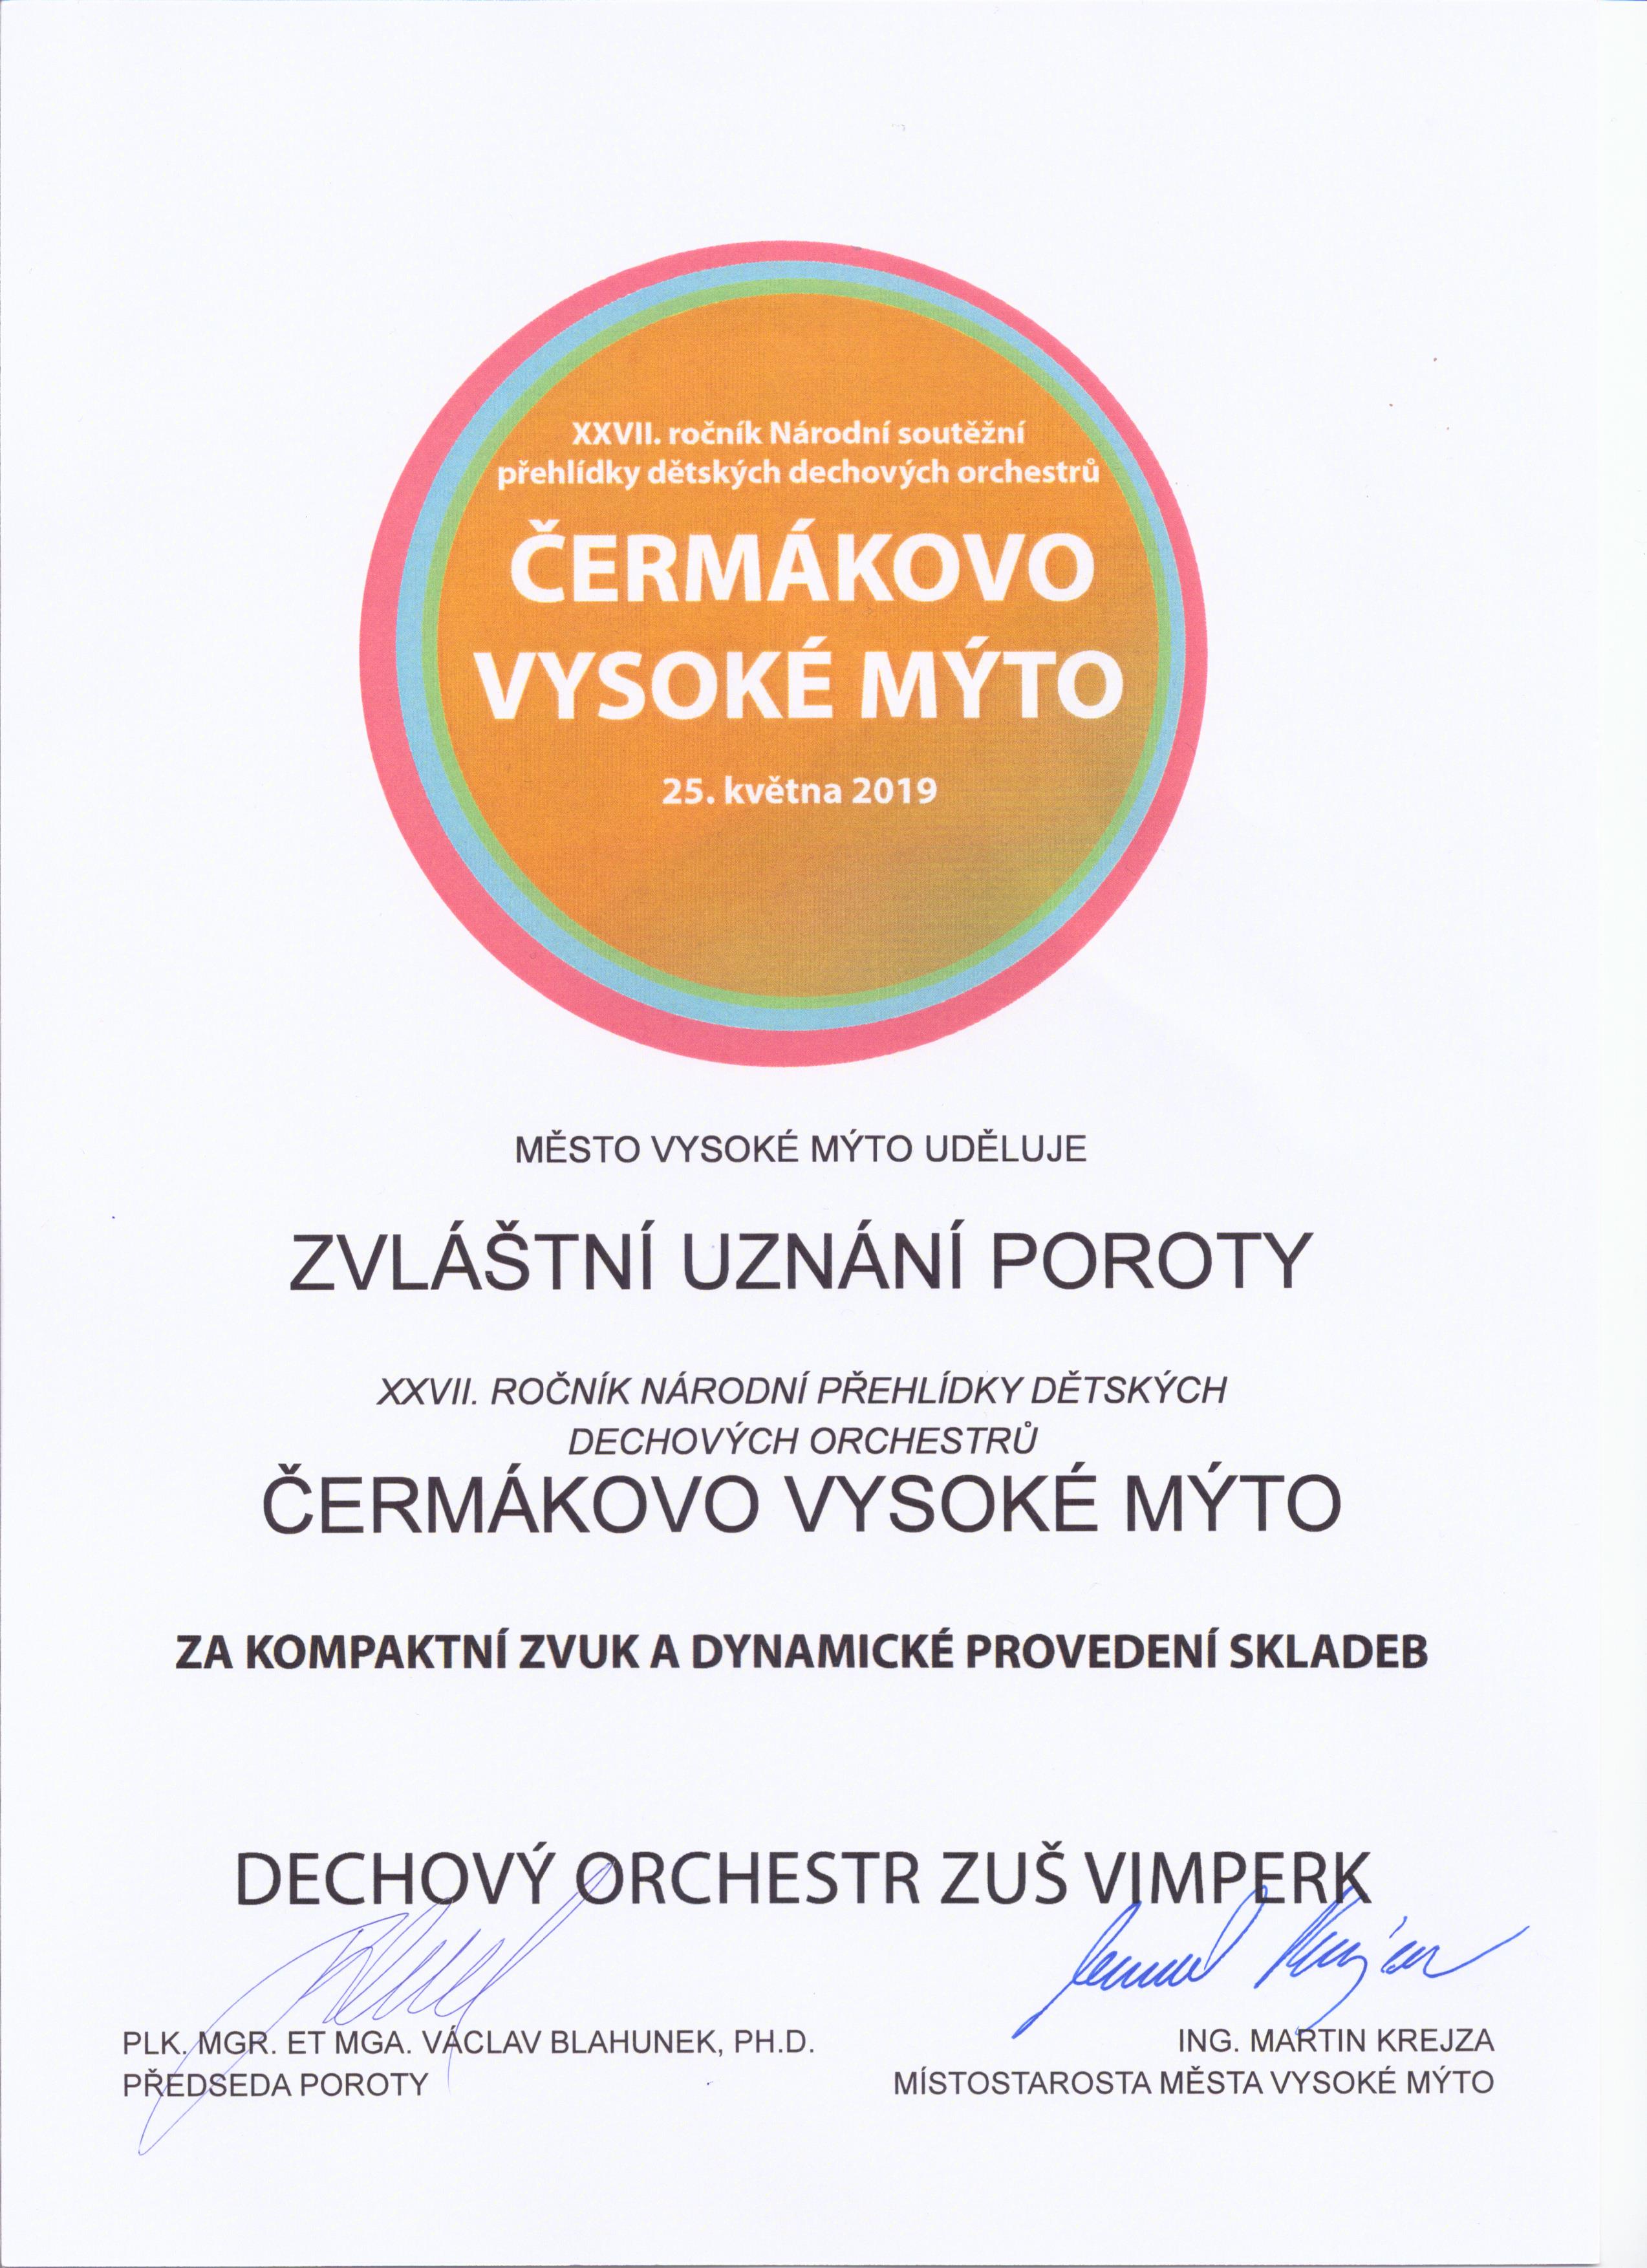 Čermákovo-Vysoké-Mýto-2019-zvláštní-uznání-poroty-za-kompaktní-zvuk-a-za-dynamické-provedení-skladeb